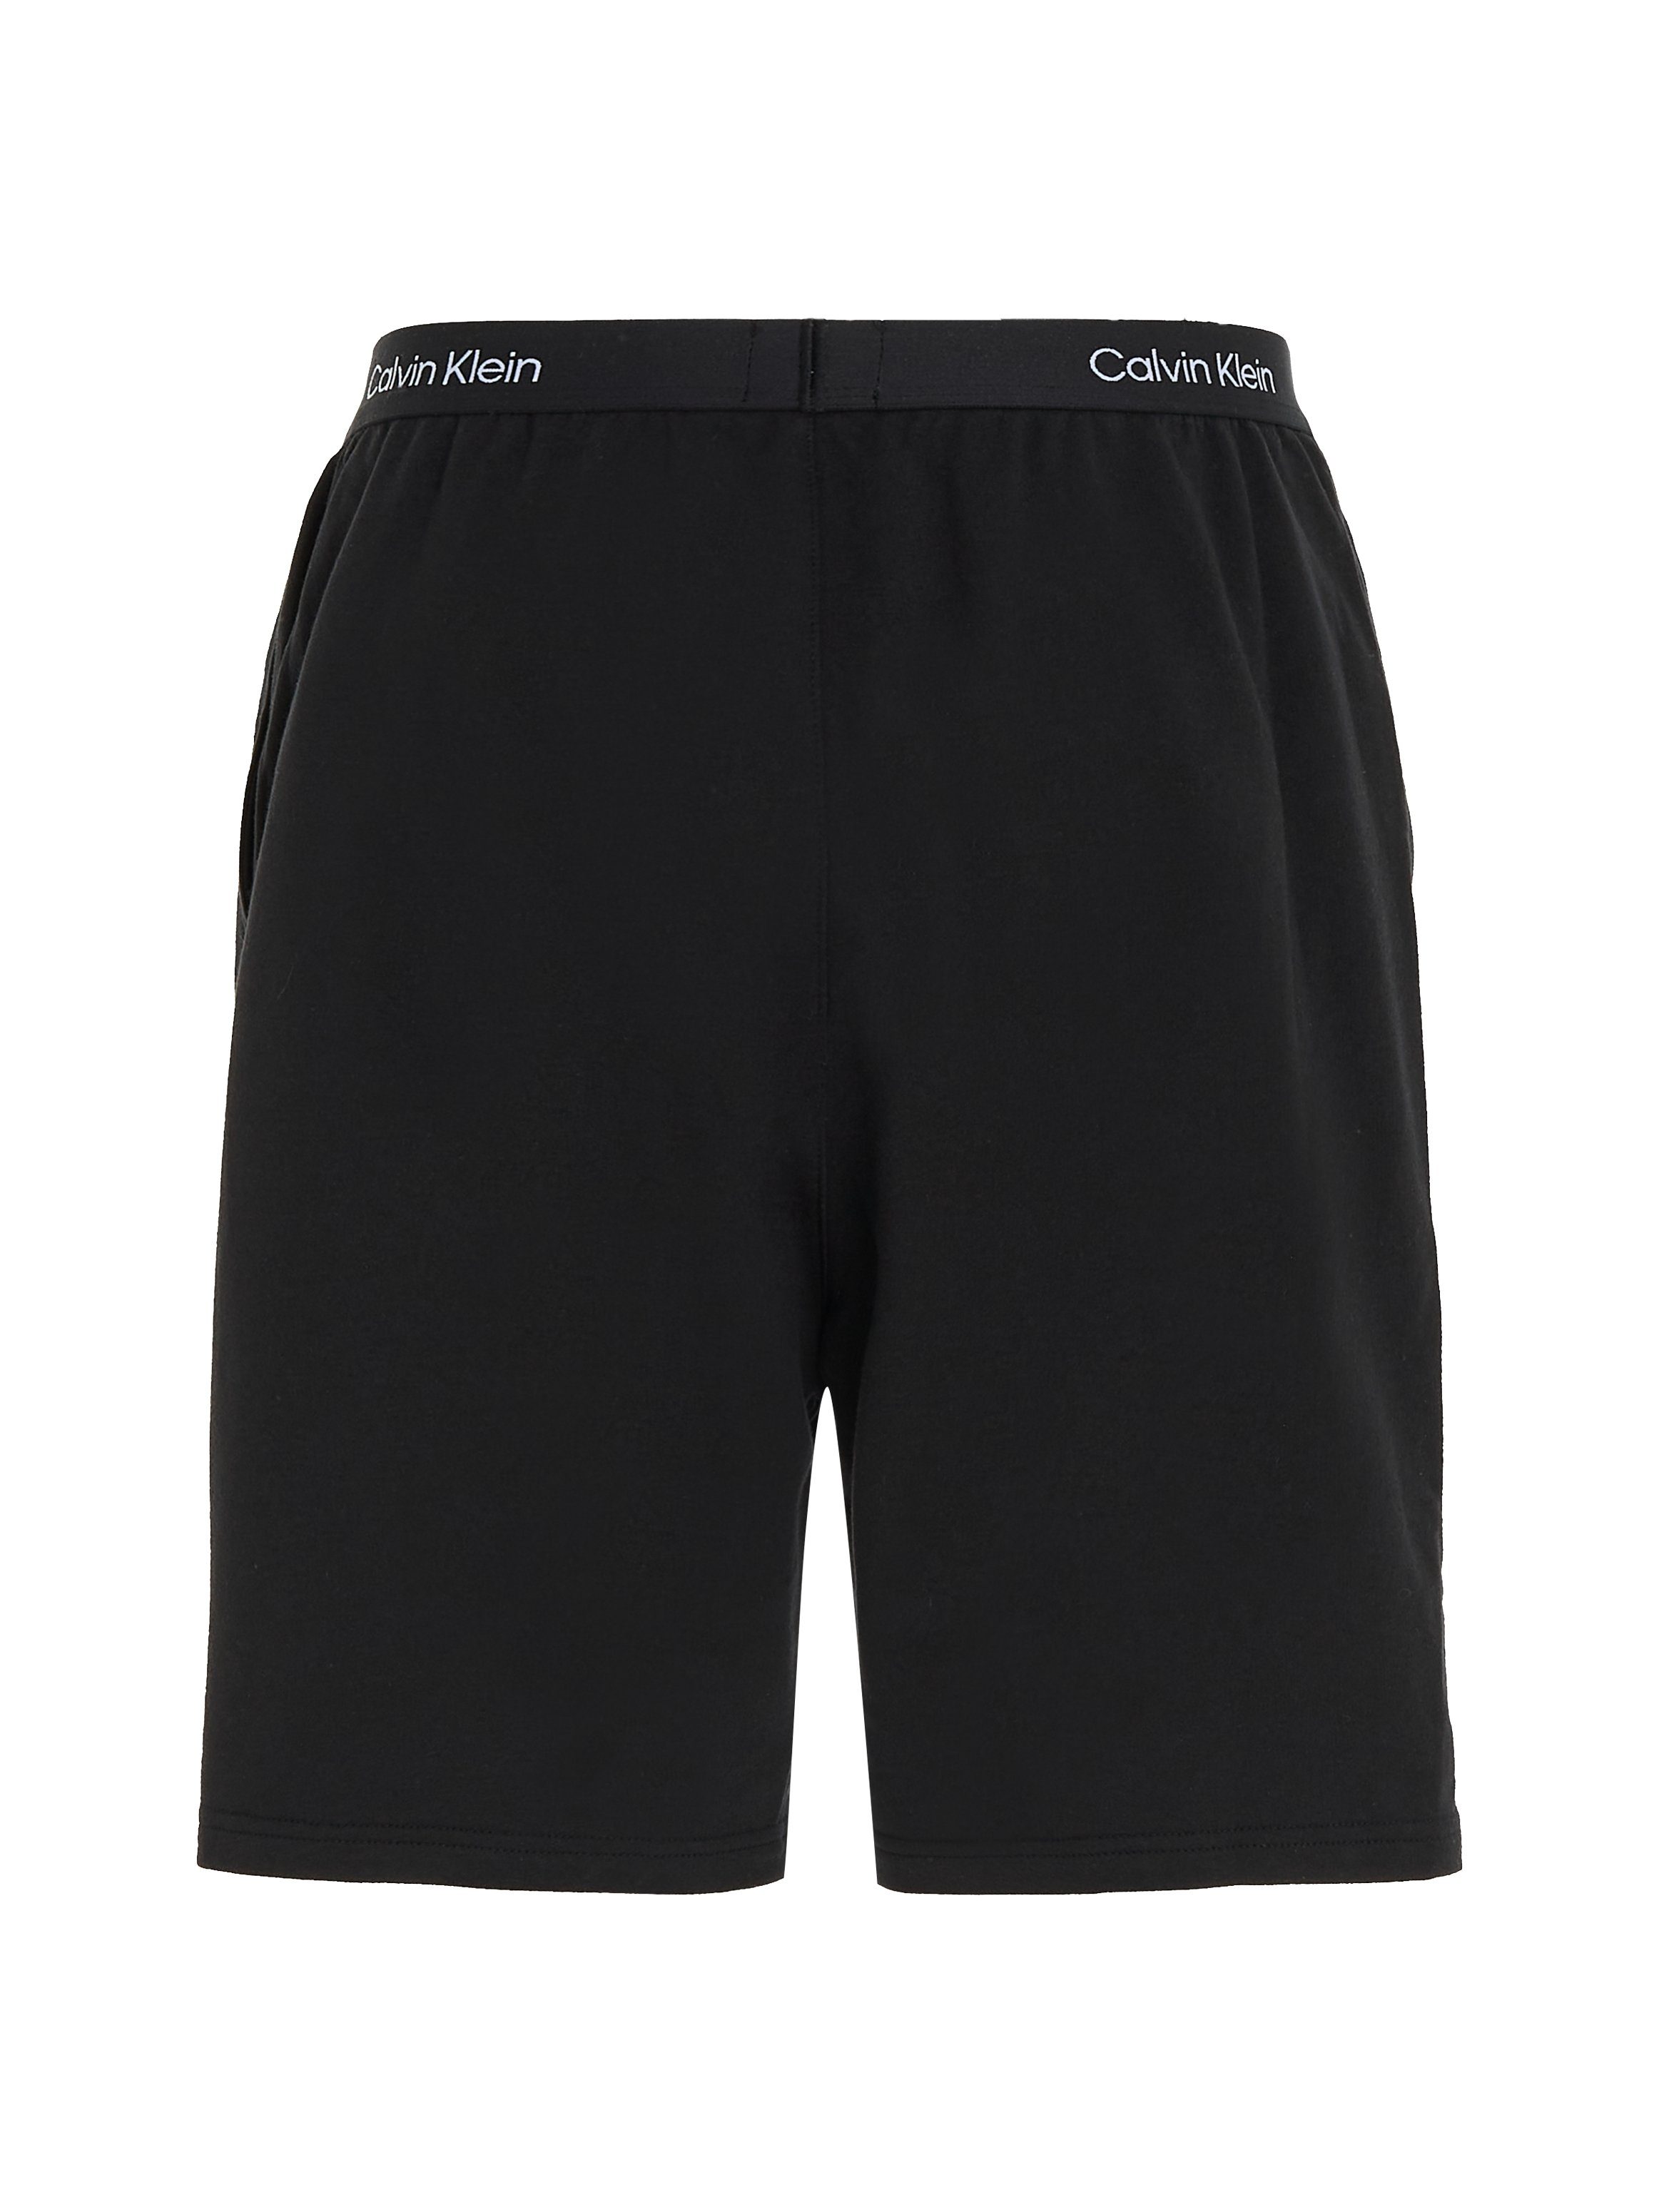 Calvin Klein Underwear BLACK Logo-Elastikbund Schlafshorts SLEEP Calvin Klein mit SHORT